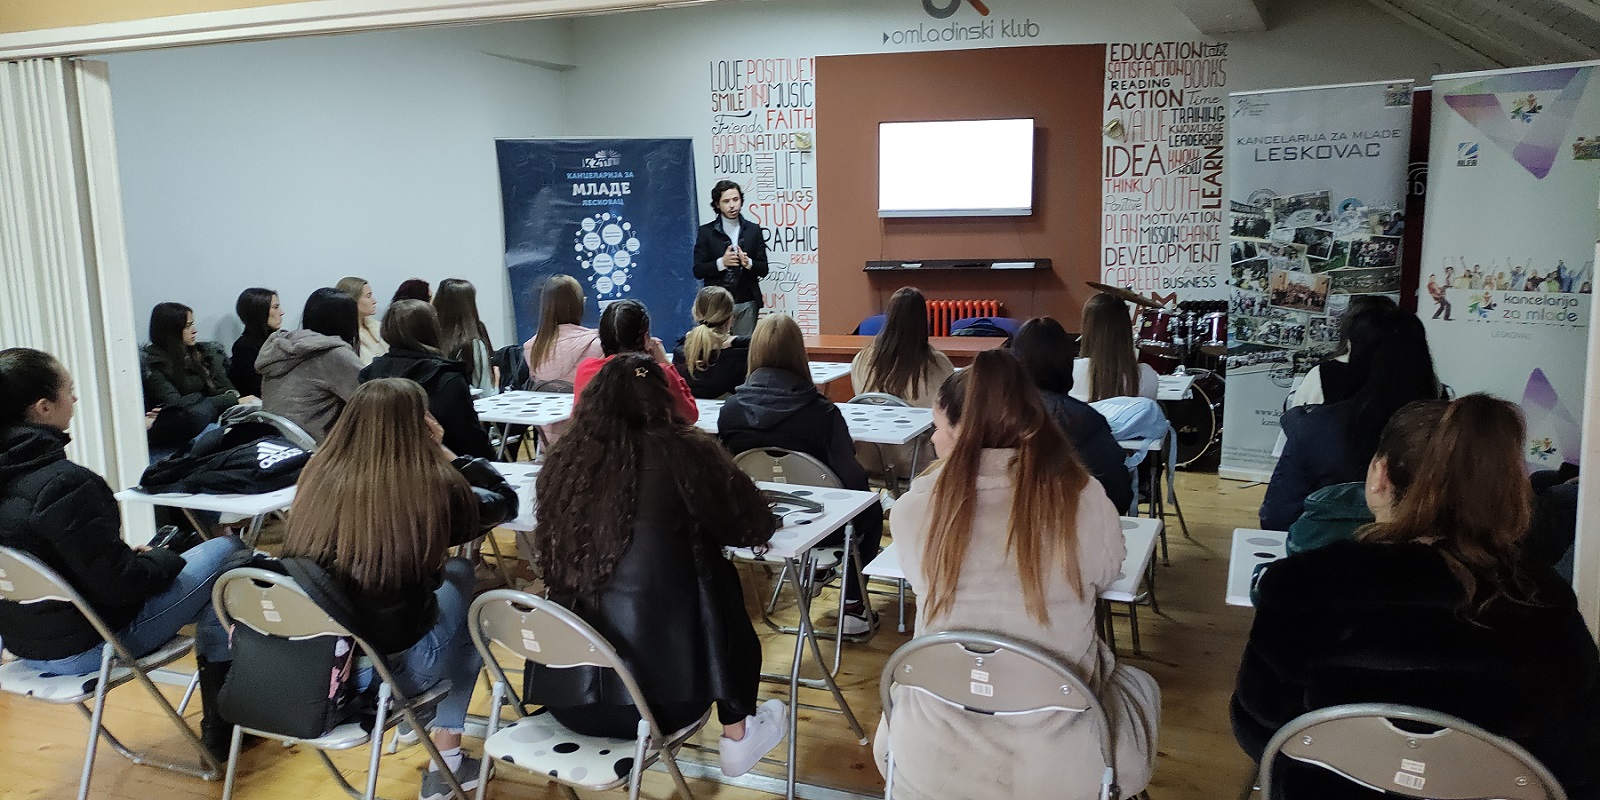 Organizacija srpskih studenata u inostranstvu održala predavanje u Omladinskom klubu